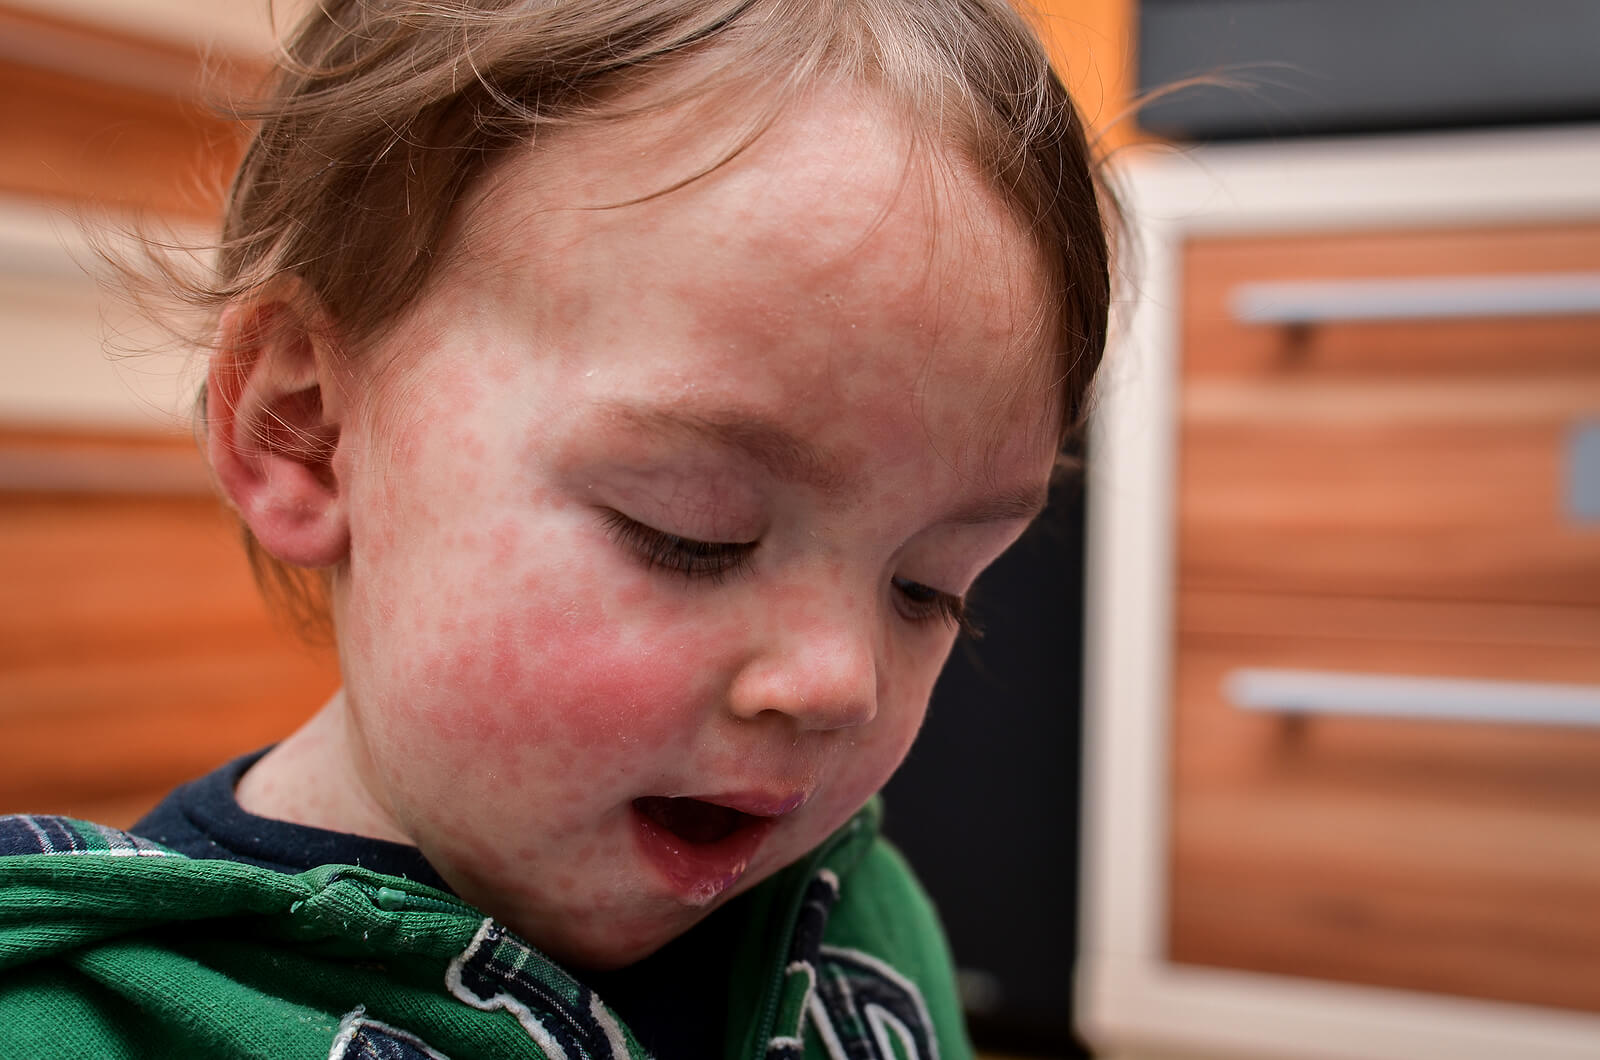 Enfant souffrant d'allergies cutanées.